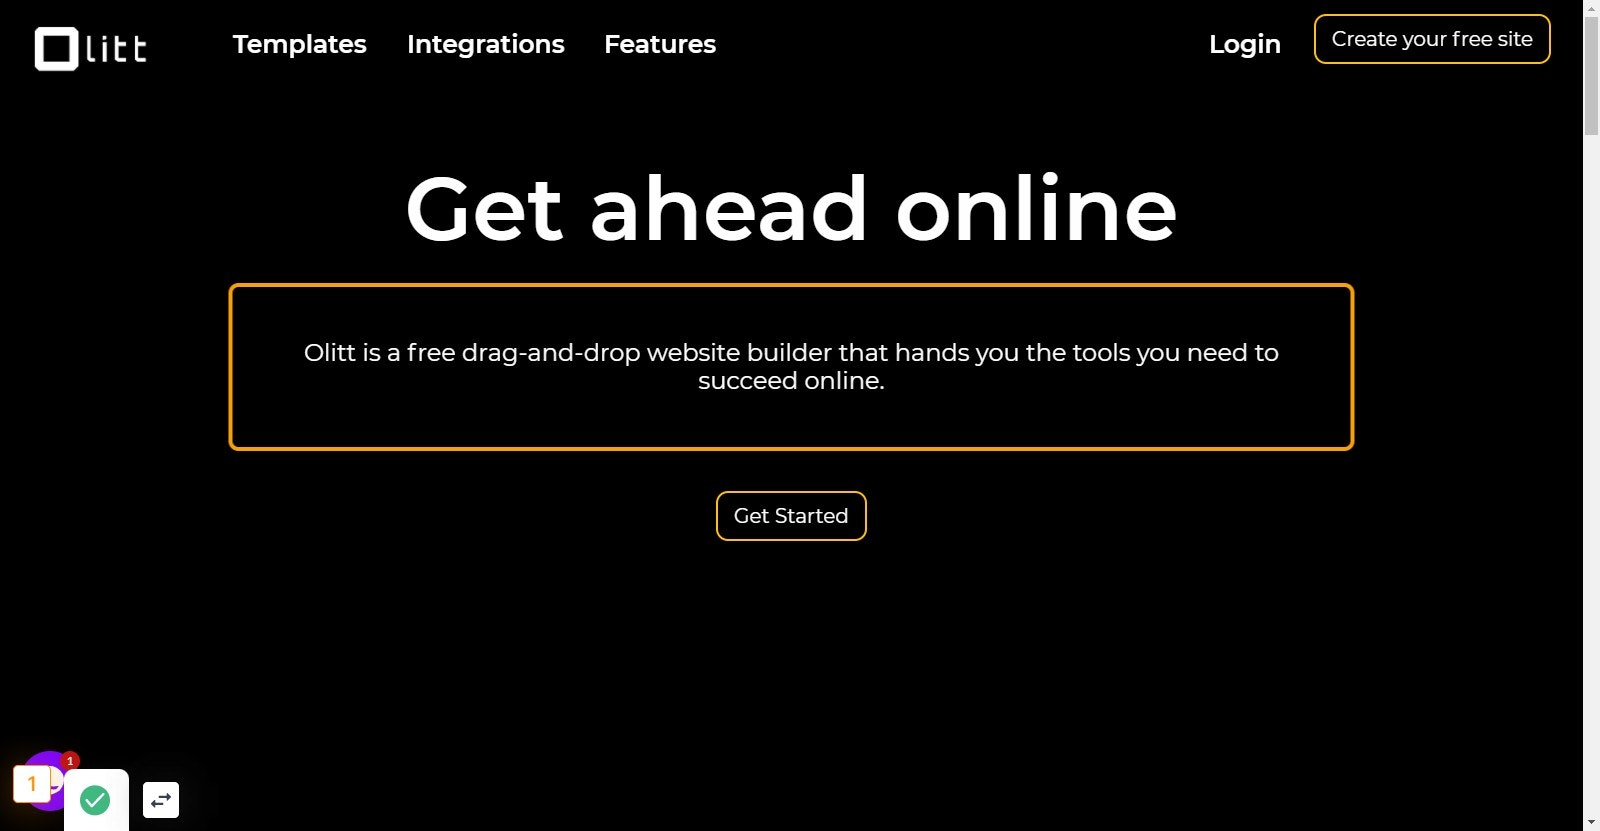 Go to Create a Free Website, Free Website Builder | Olitt.com